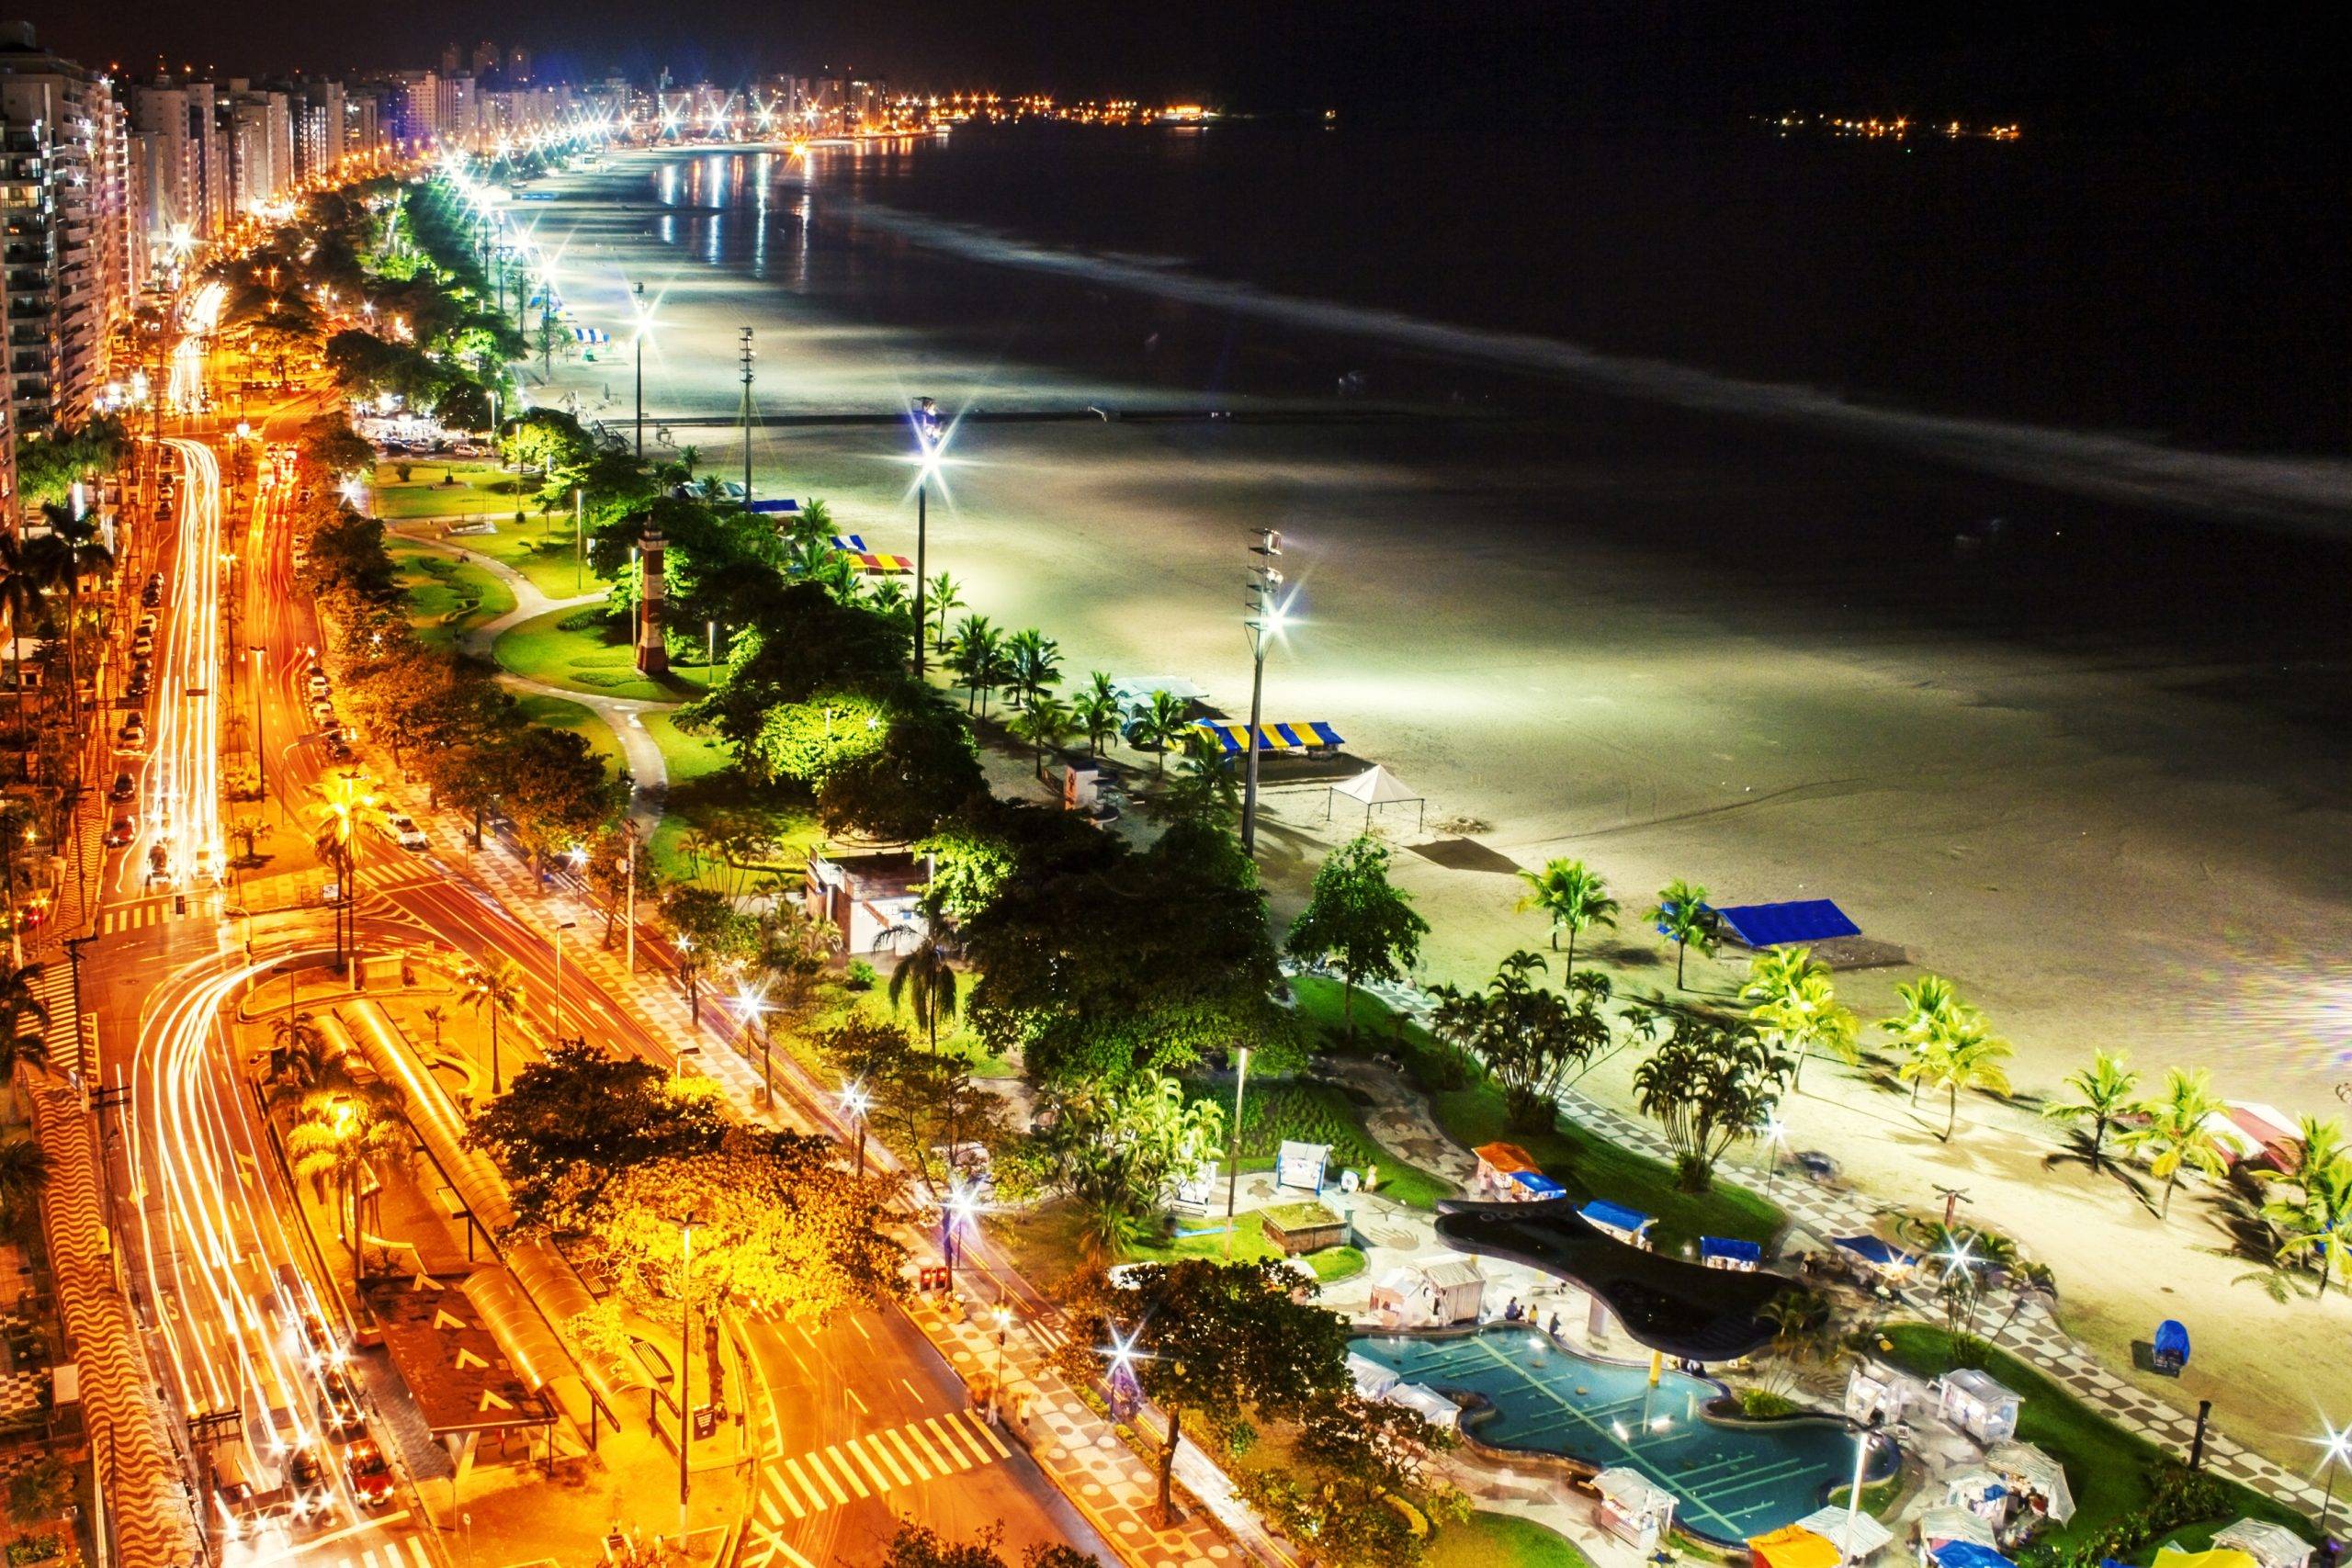 www.juicysantos.com.br - santos está entre as cidades inteligentes do brasil